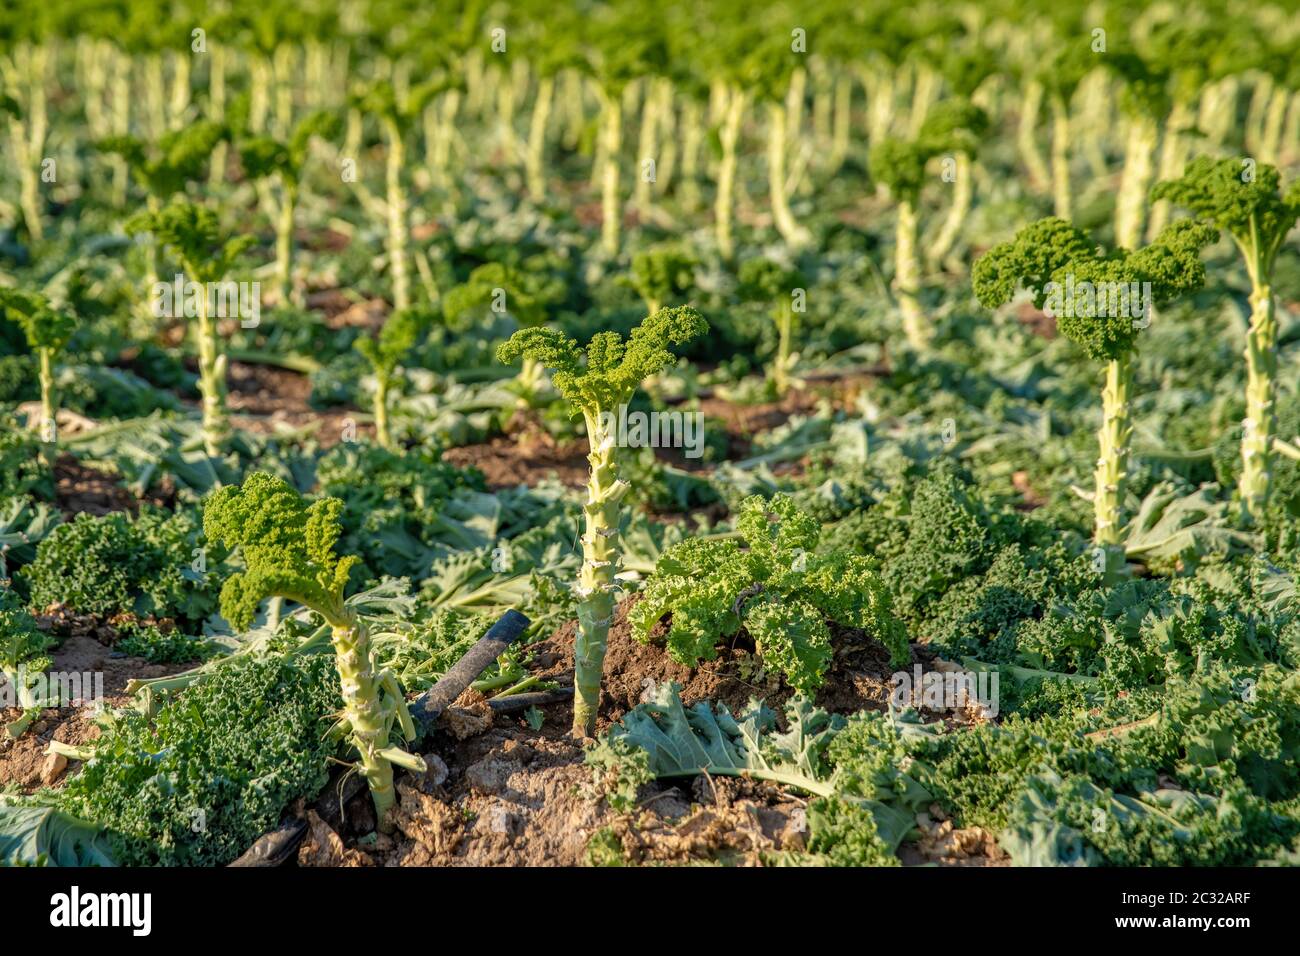 Curly kale grown on a farm field in Spain. Stock Photo